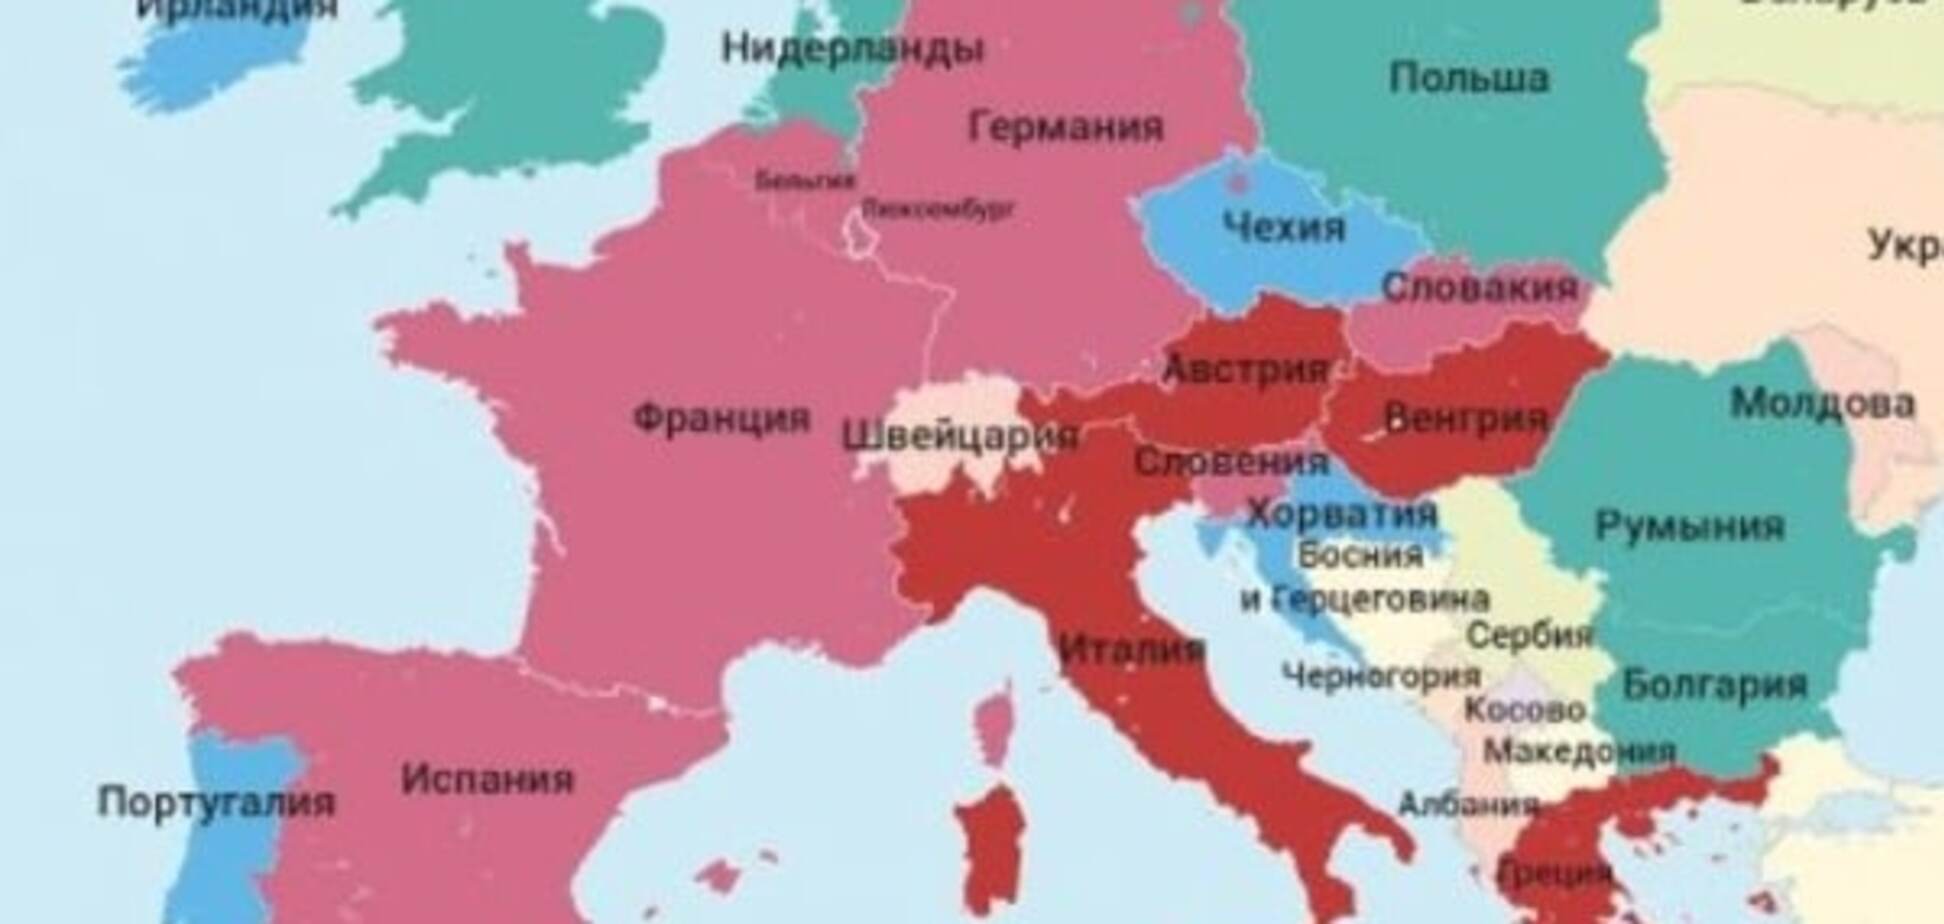 Друзья и враги Путина: составлена карта лояльности стран ЕС к России